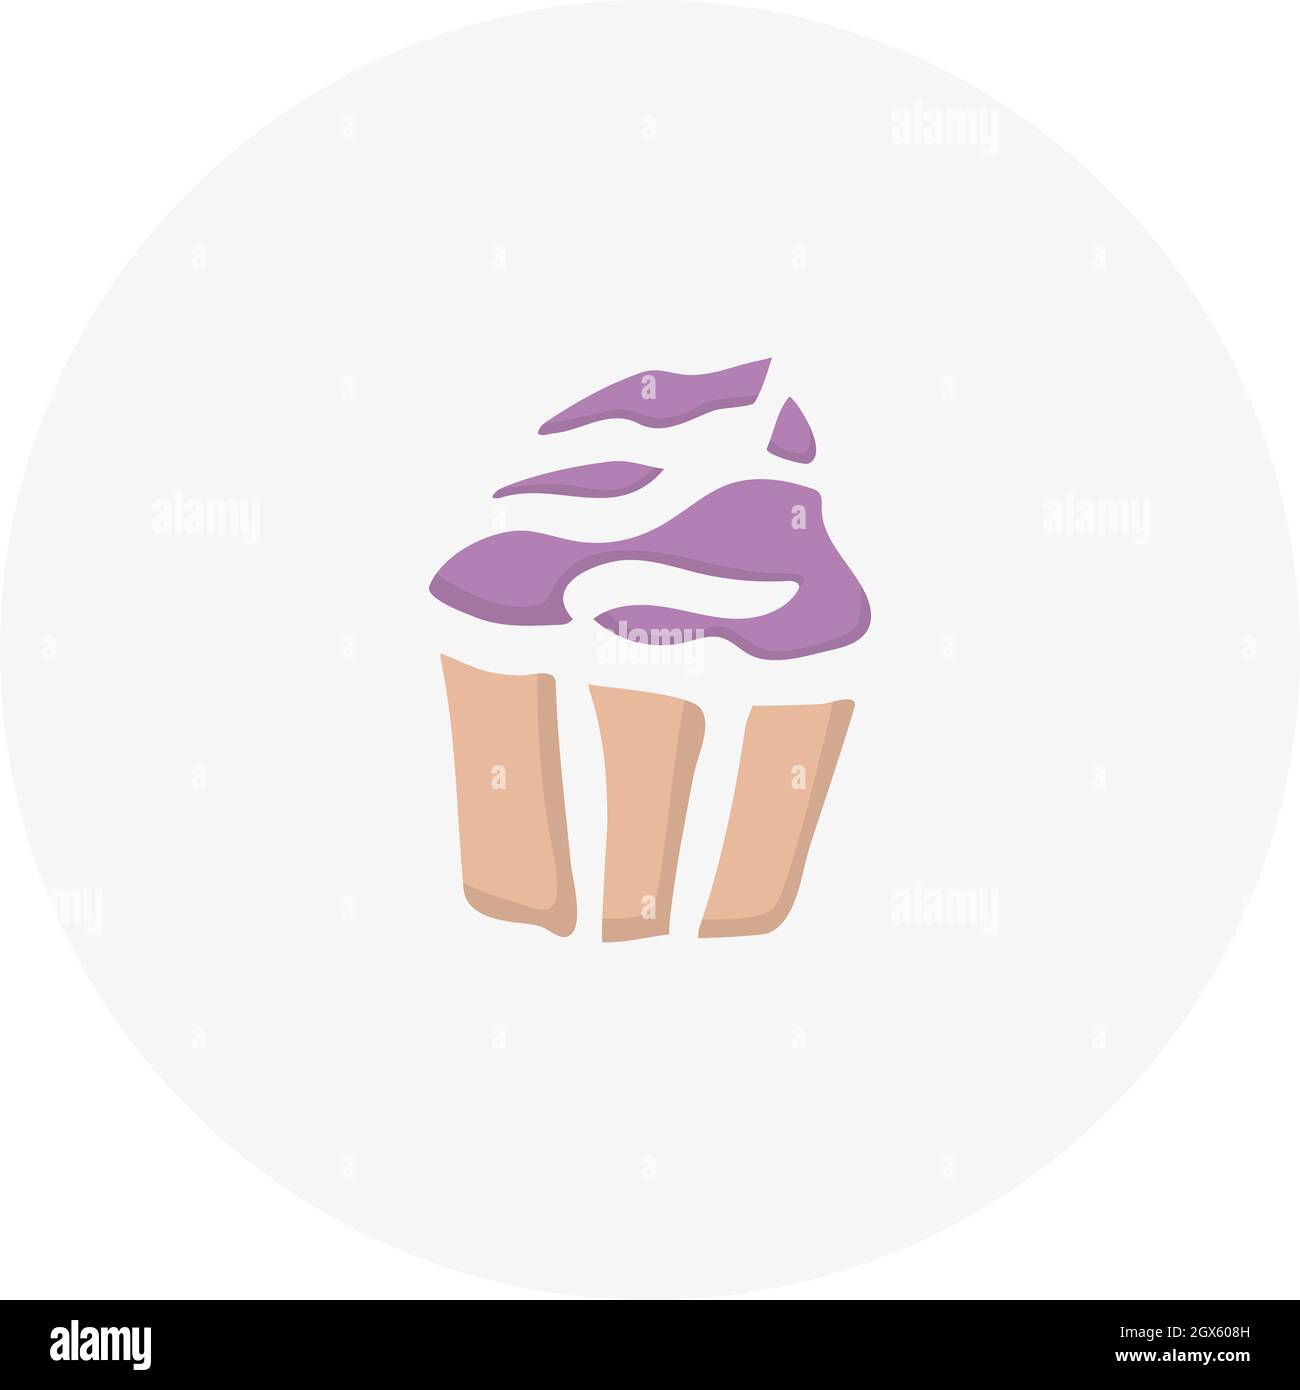 Handgezogener Muffin. Vektordarstellung im Doodle-Stil. Gestaltungselement für Postkarten, Einladungen oder andere Grafik- und Webdesign. Stock Vektor